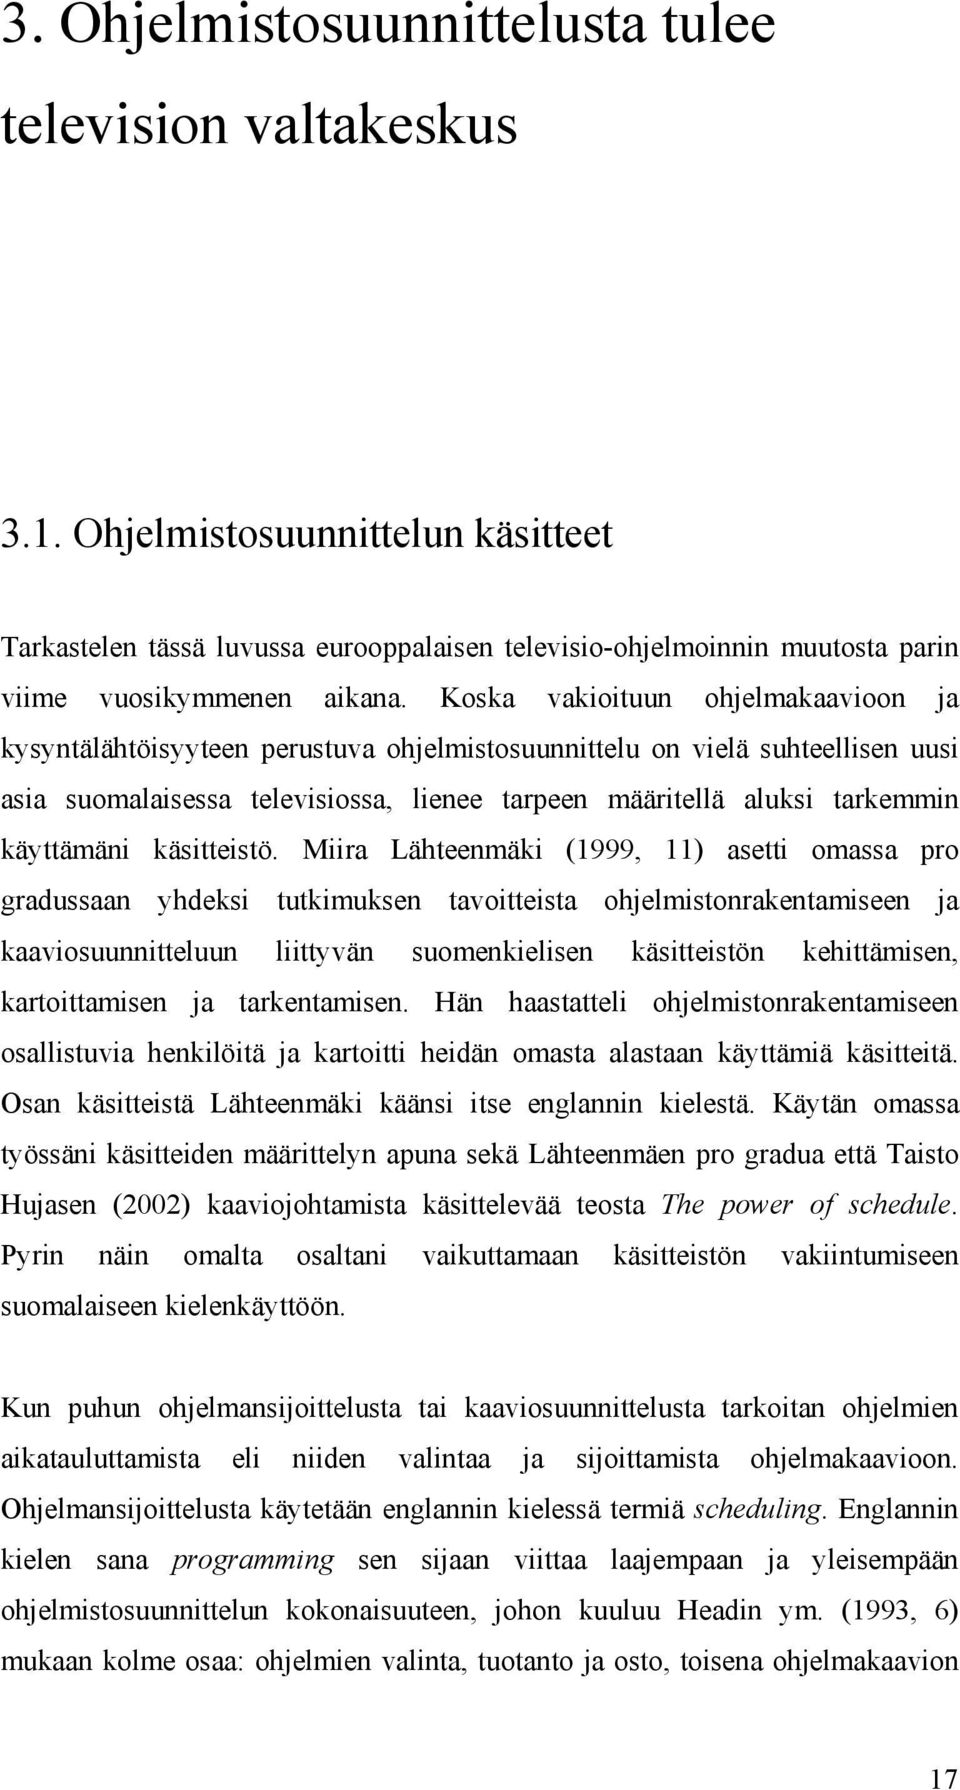 Koska vakioituun ohjelmakaavioon ja kysyntälähtöisyyteen perustuva ohjelmistosuunnittelu on vielä suhteellisen uusi asia suomalaisessa televisiossa, lienee tarpeen määritellä aluksi tarkemmin